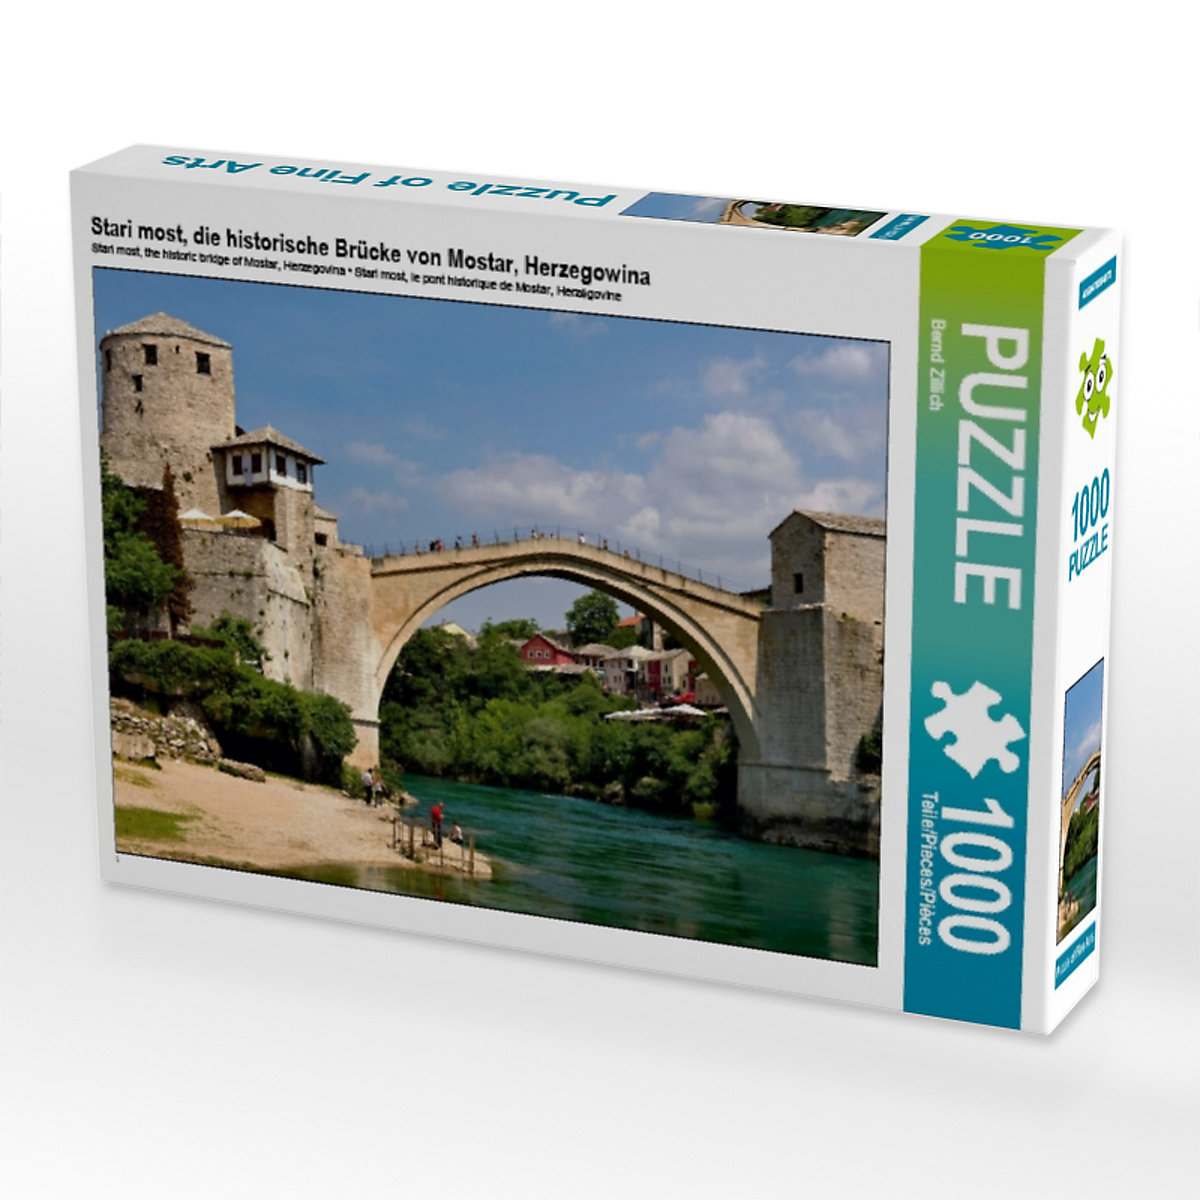 CALVENDO® Puzzle CALVENDO Puzzle Stari most die historische Brücke von Mostar Herzegowina 1000 Teile Foto-Puzzle für glückliche Stunden